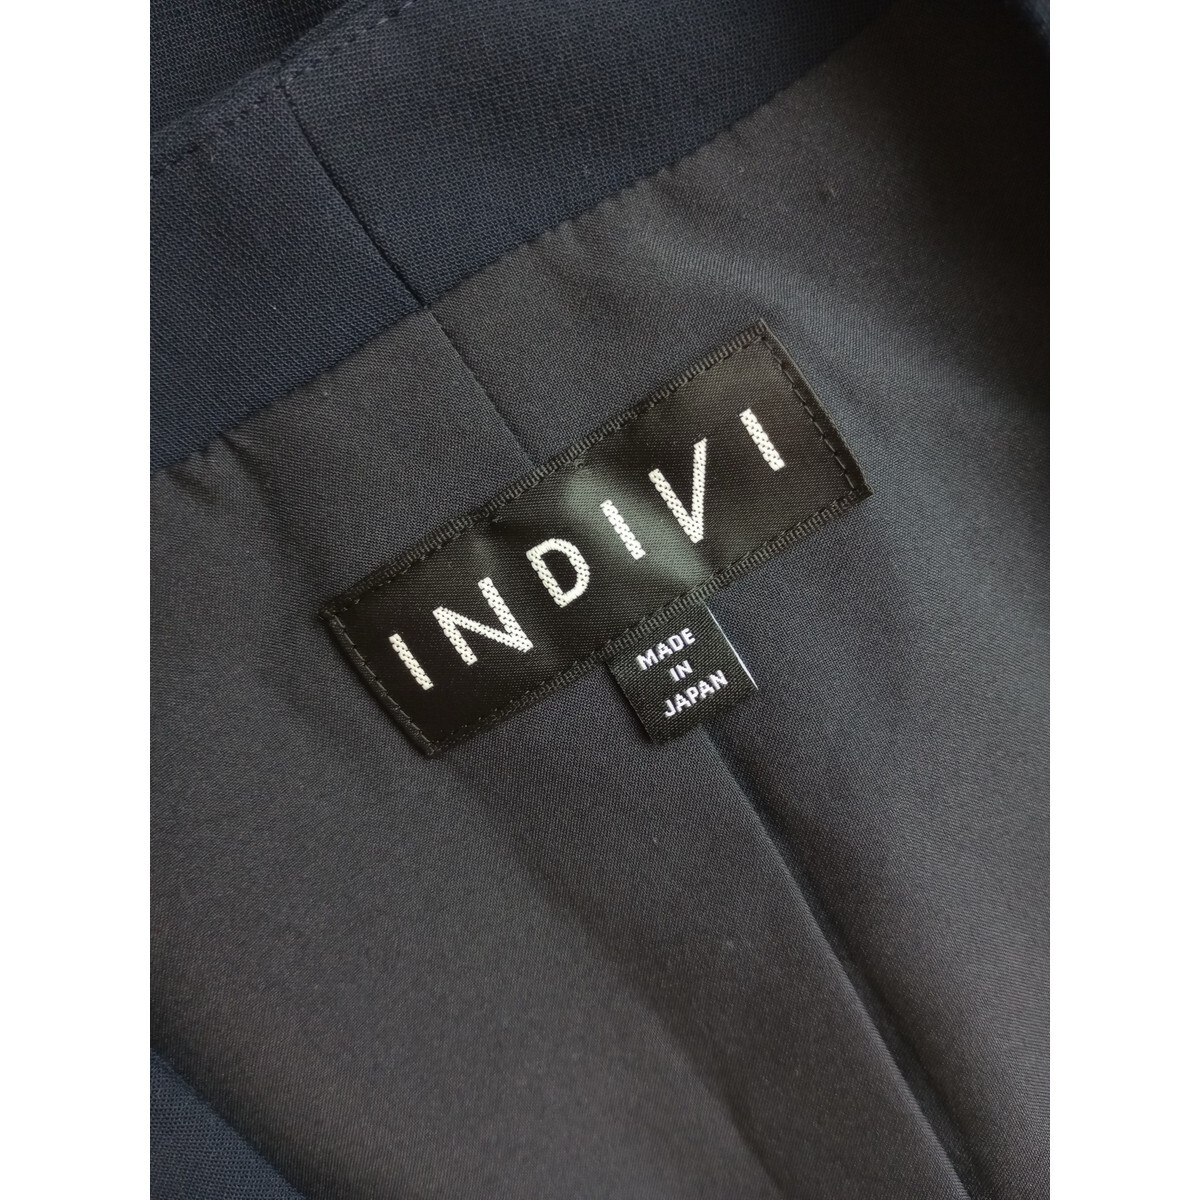 INDIVI インディヴィ「賢い女性は美しい」ノーカラー ジャケット 羽織り ネイビー 紺色 日本製 (65K+9052)☆_画像6